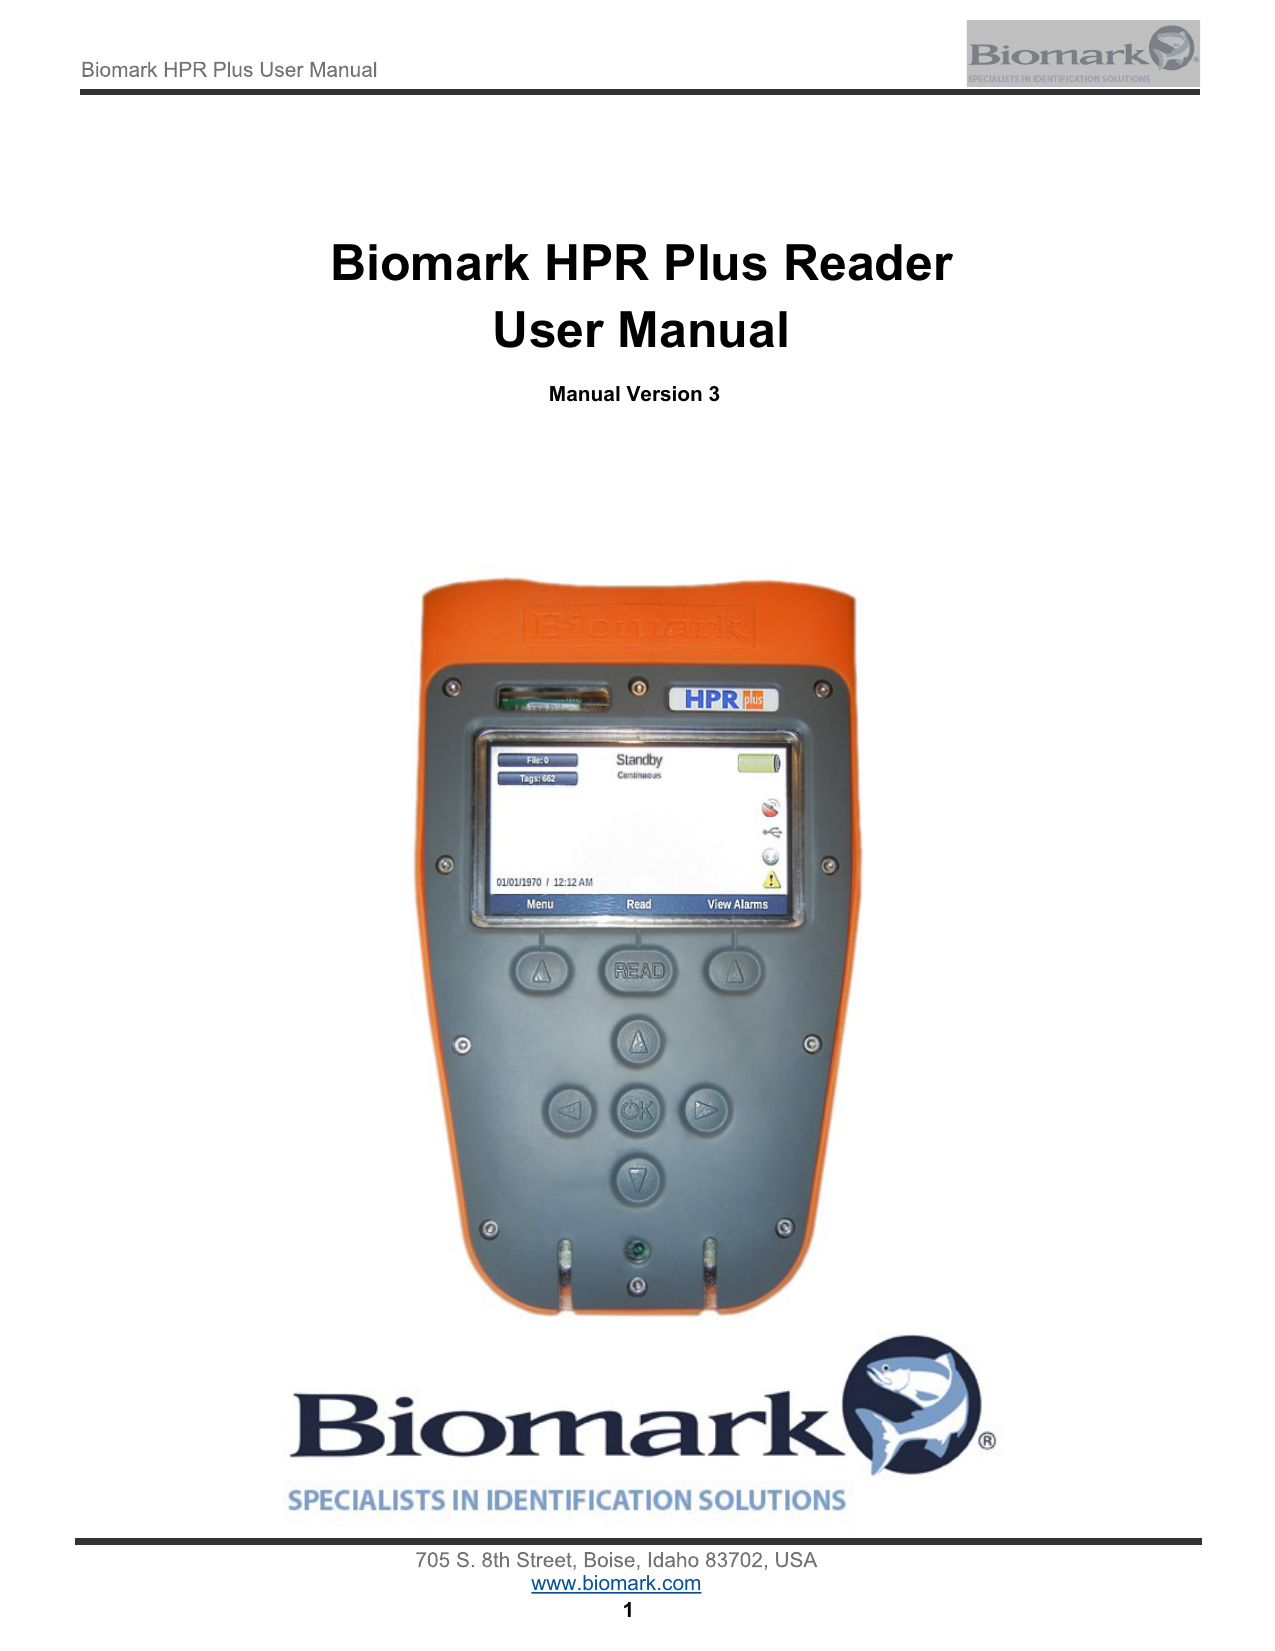 Biomark HPR Plus Reader User Manual